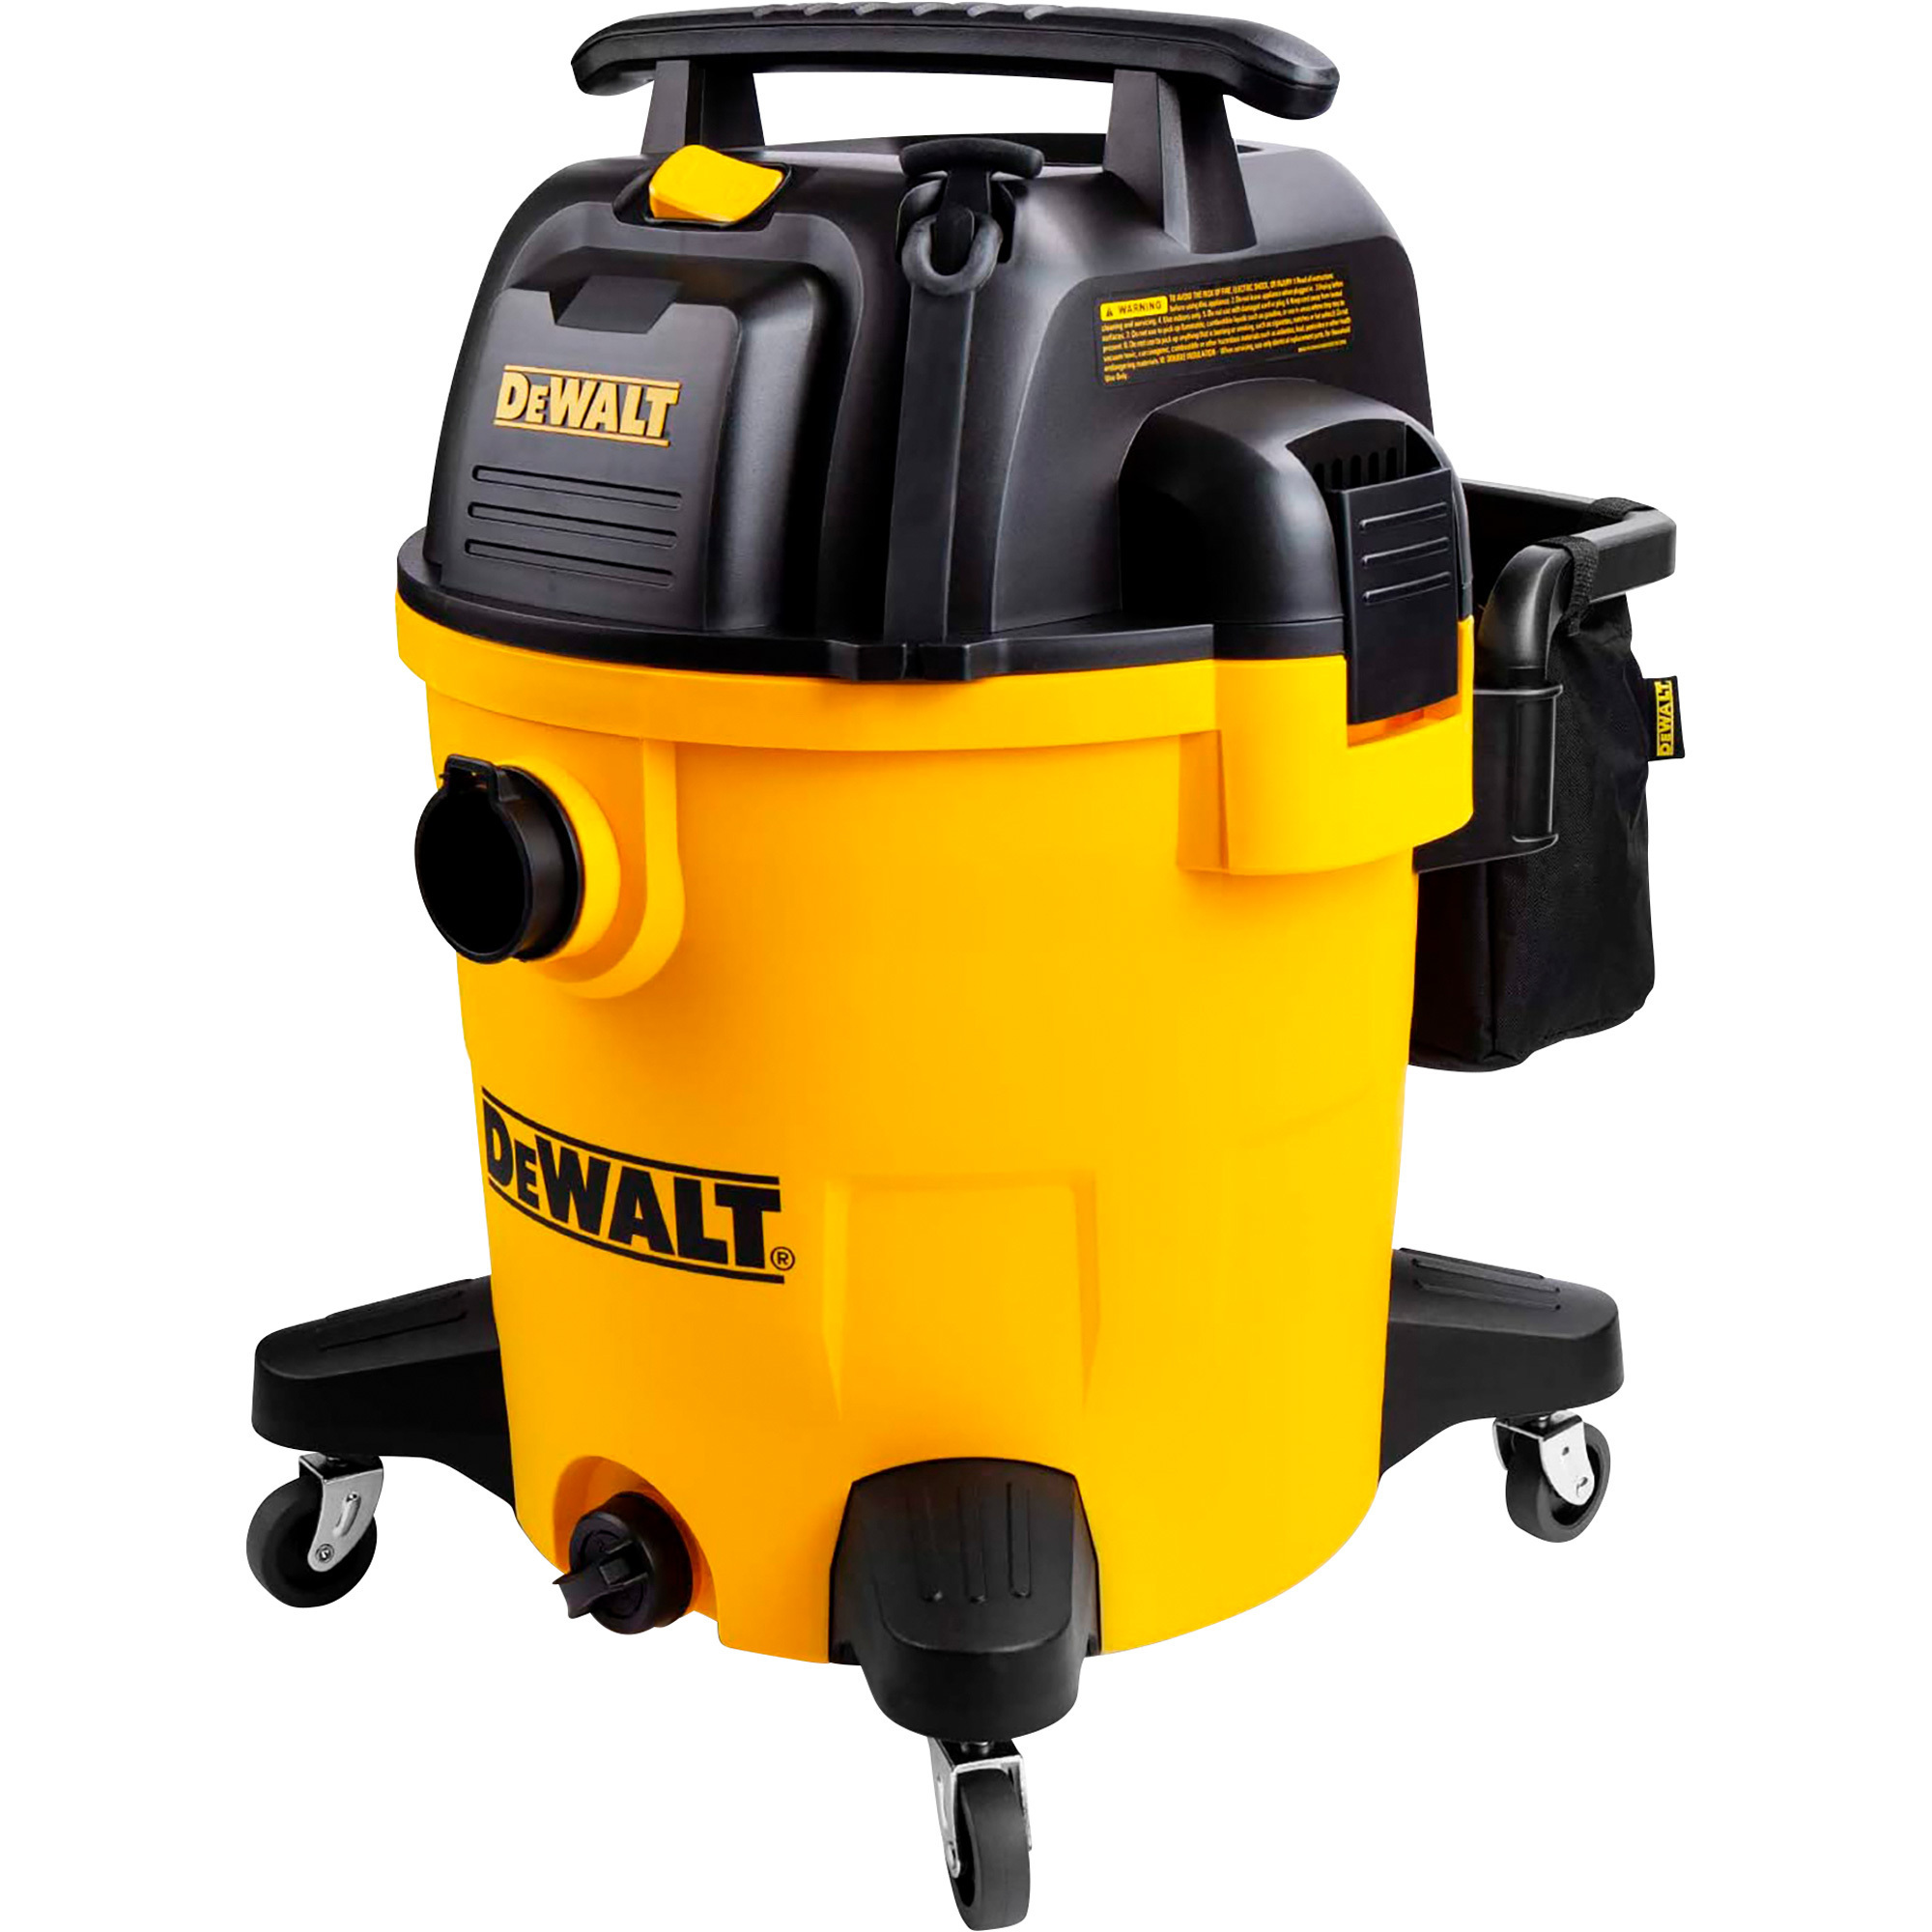 DEWALT Wet/Dry Vacuum â 12-Gallon, 5 1/2 HP